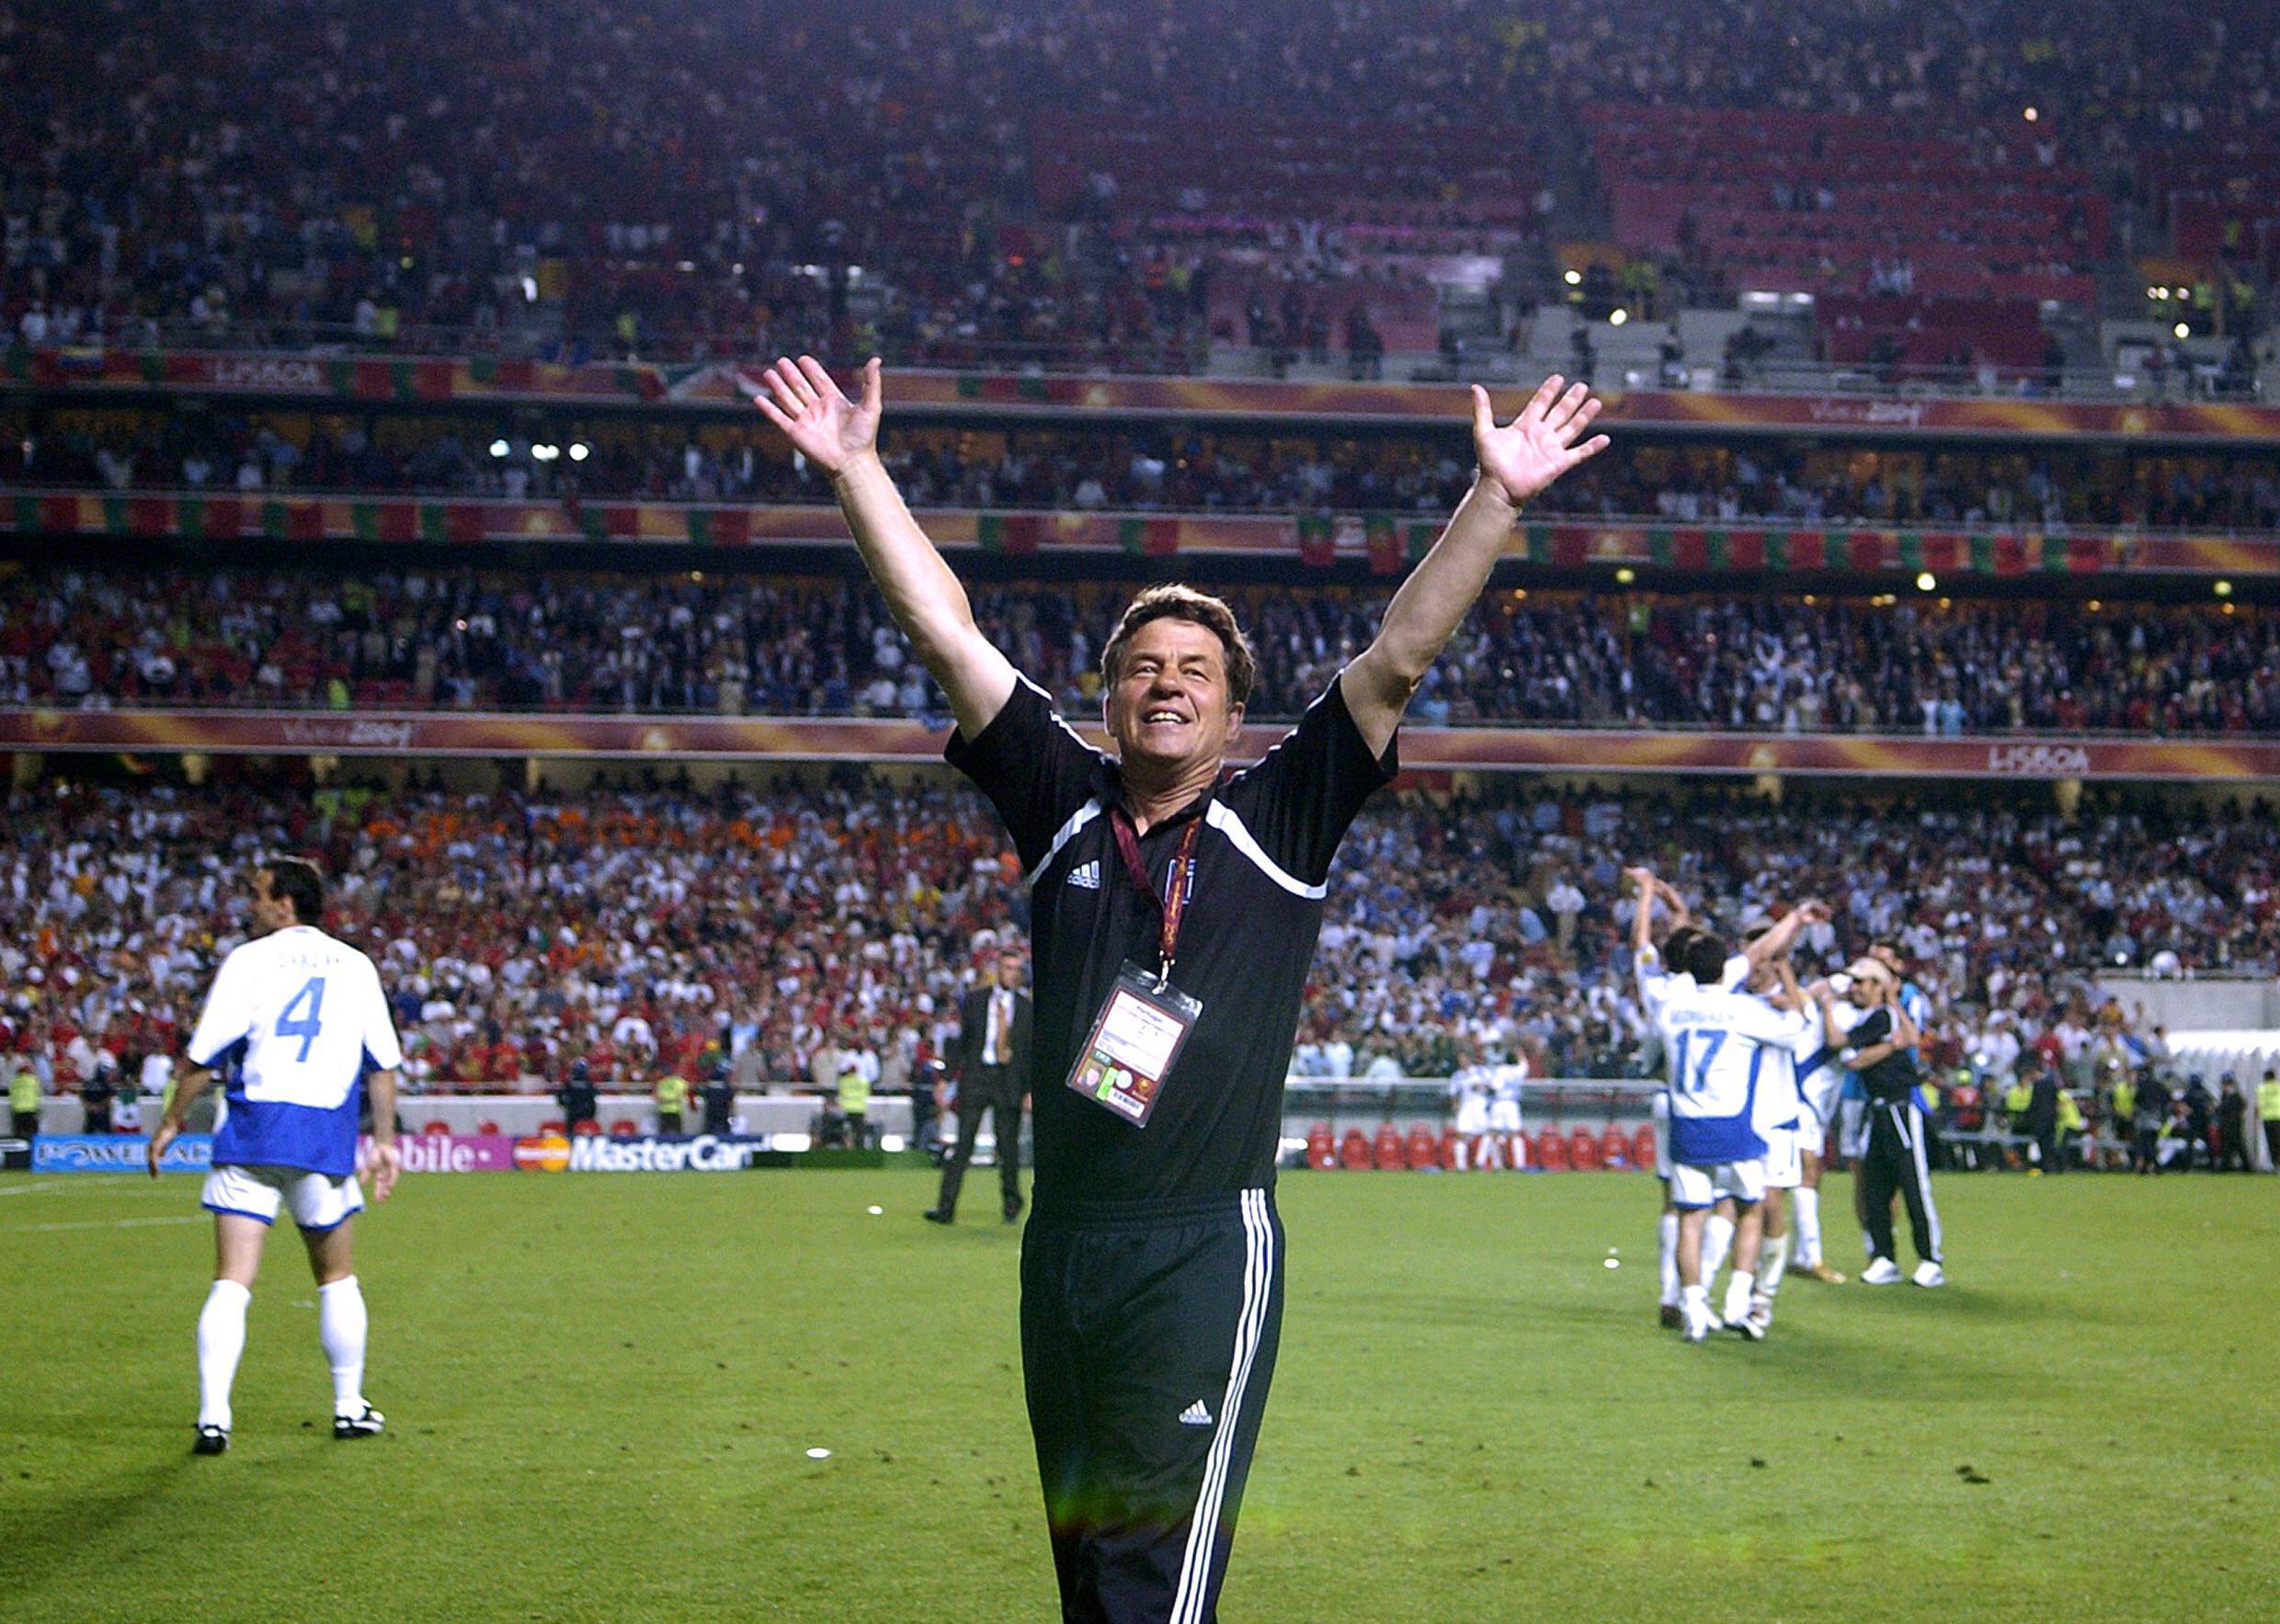 Griechenland und das Finale der EM 2004: Die Erzählung von König Rehakles